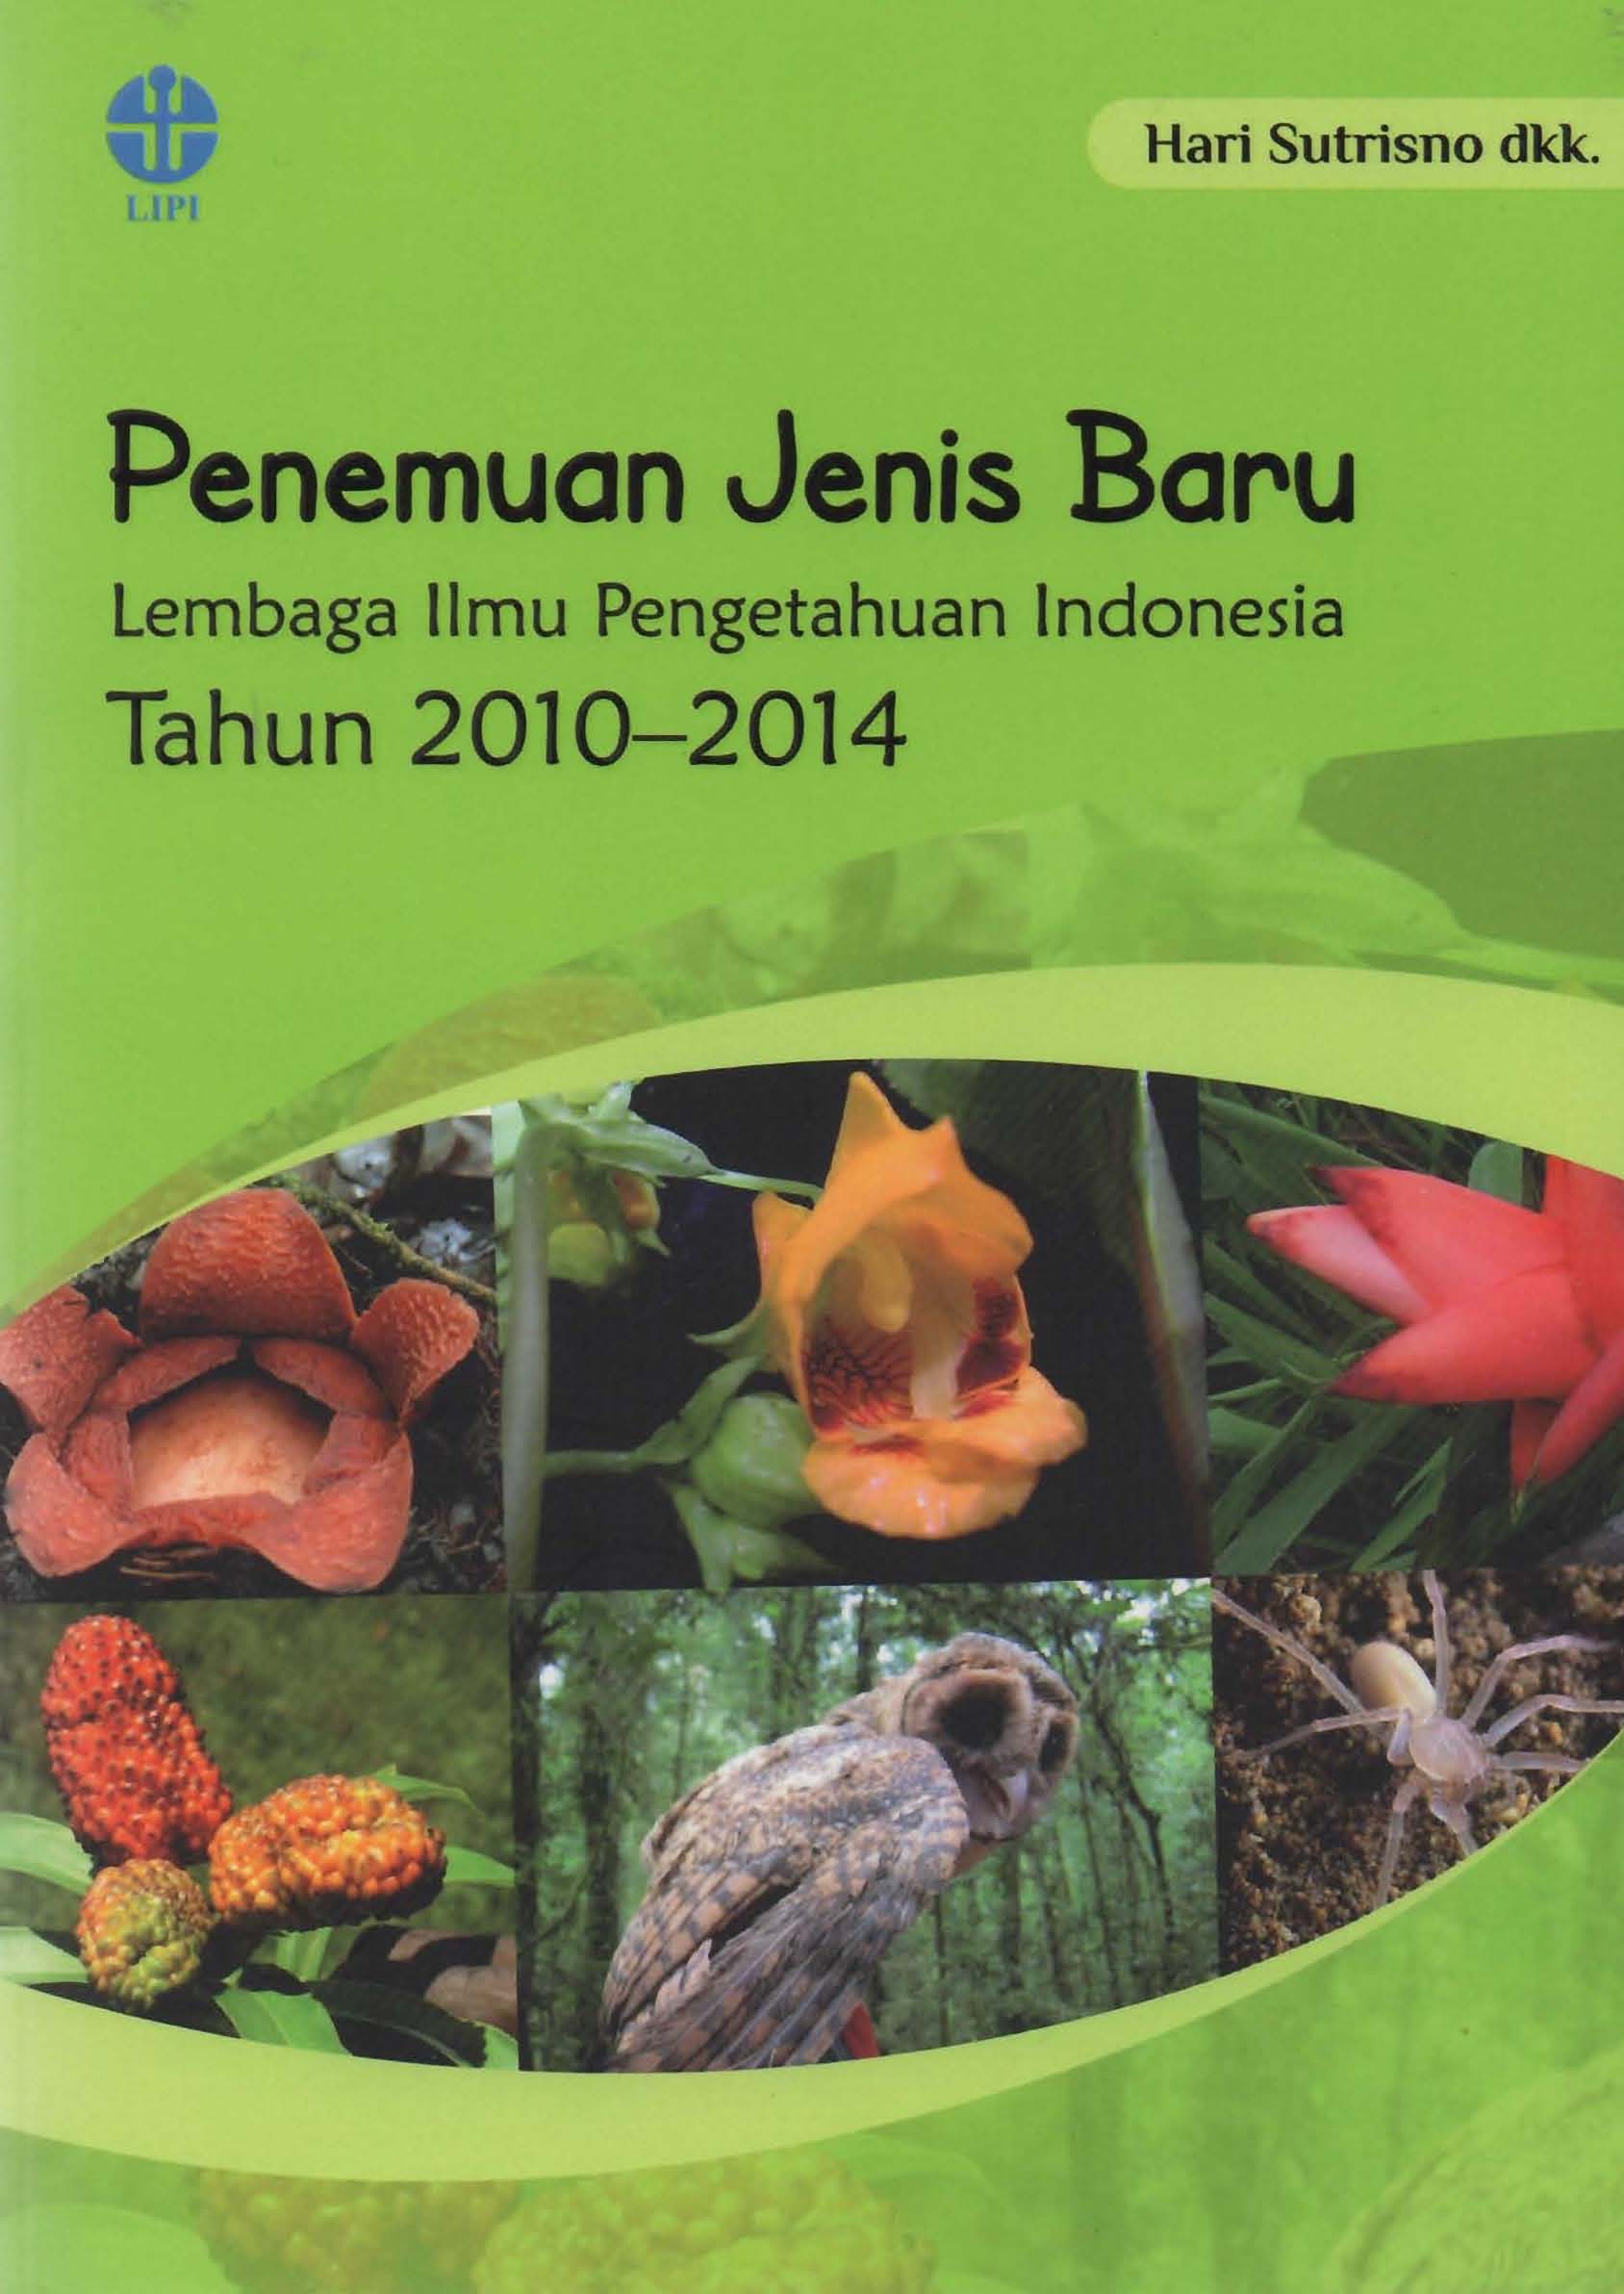 Penemuan jenis baru Lembaga Ilmu Pengetahuan Indonesia tahun 2010-2014